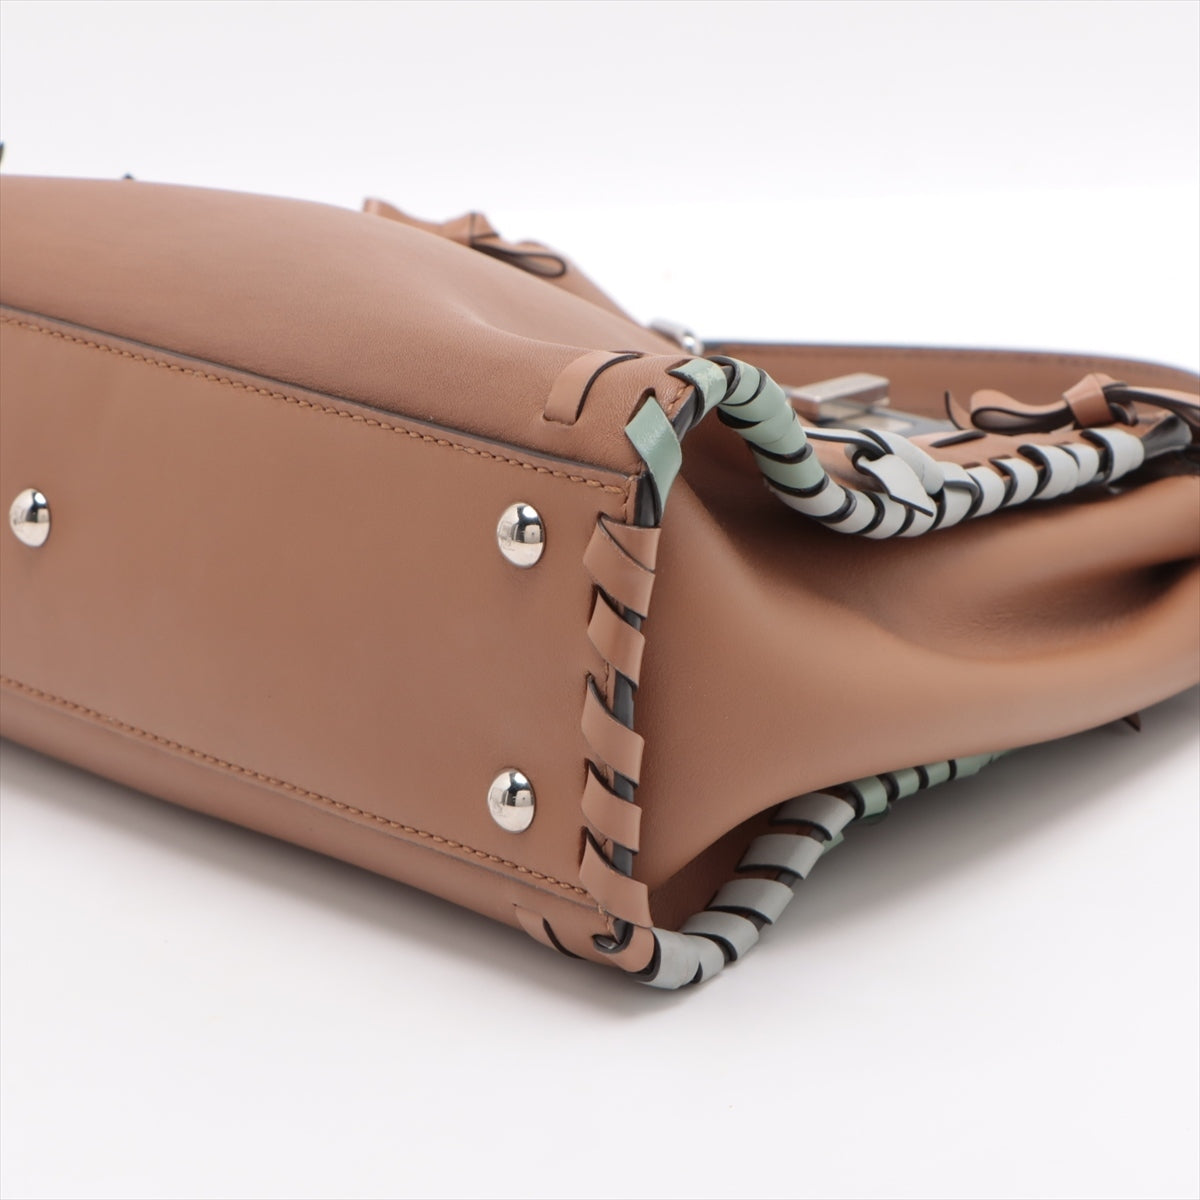 Fendi PEEKABOO REGULAR Leather 2way handbag Brown 8BN290